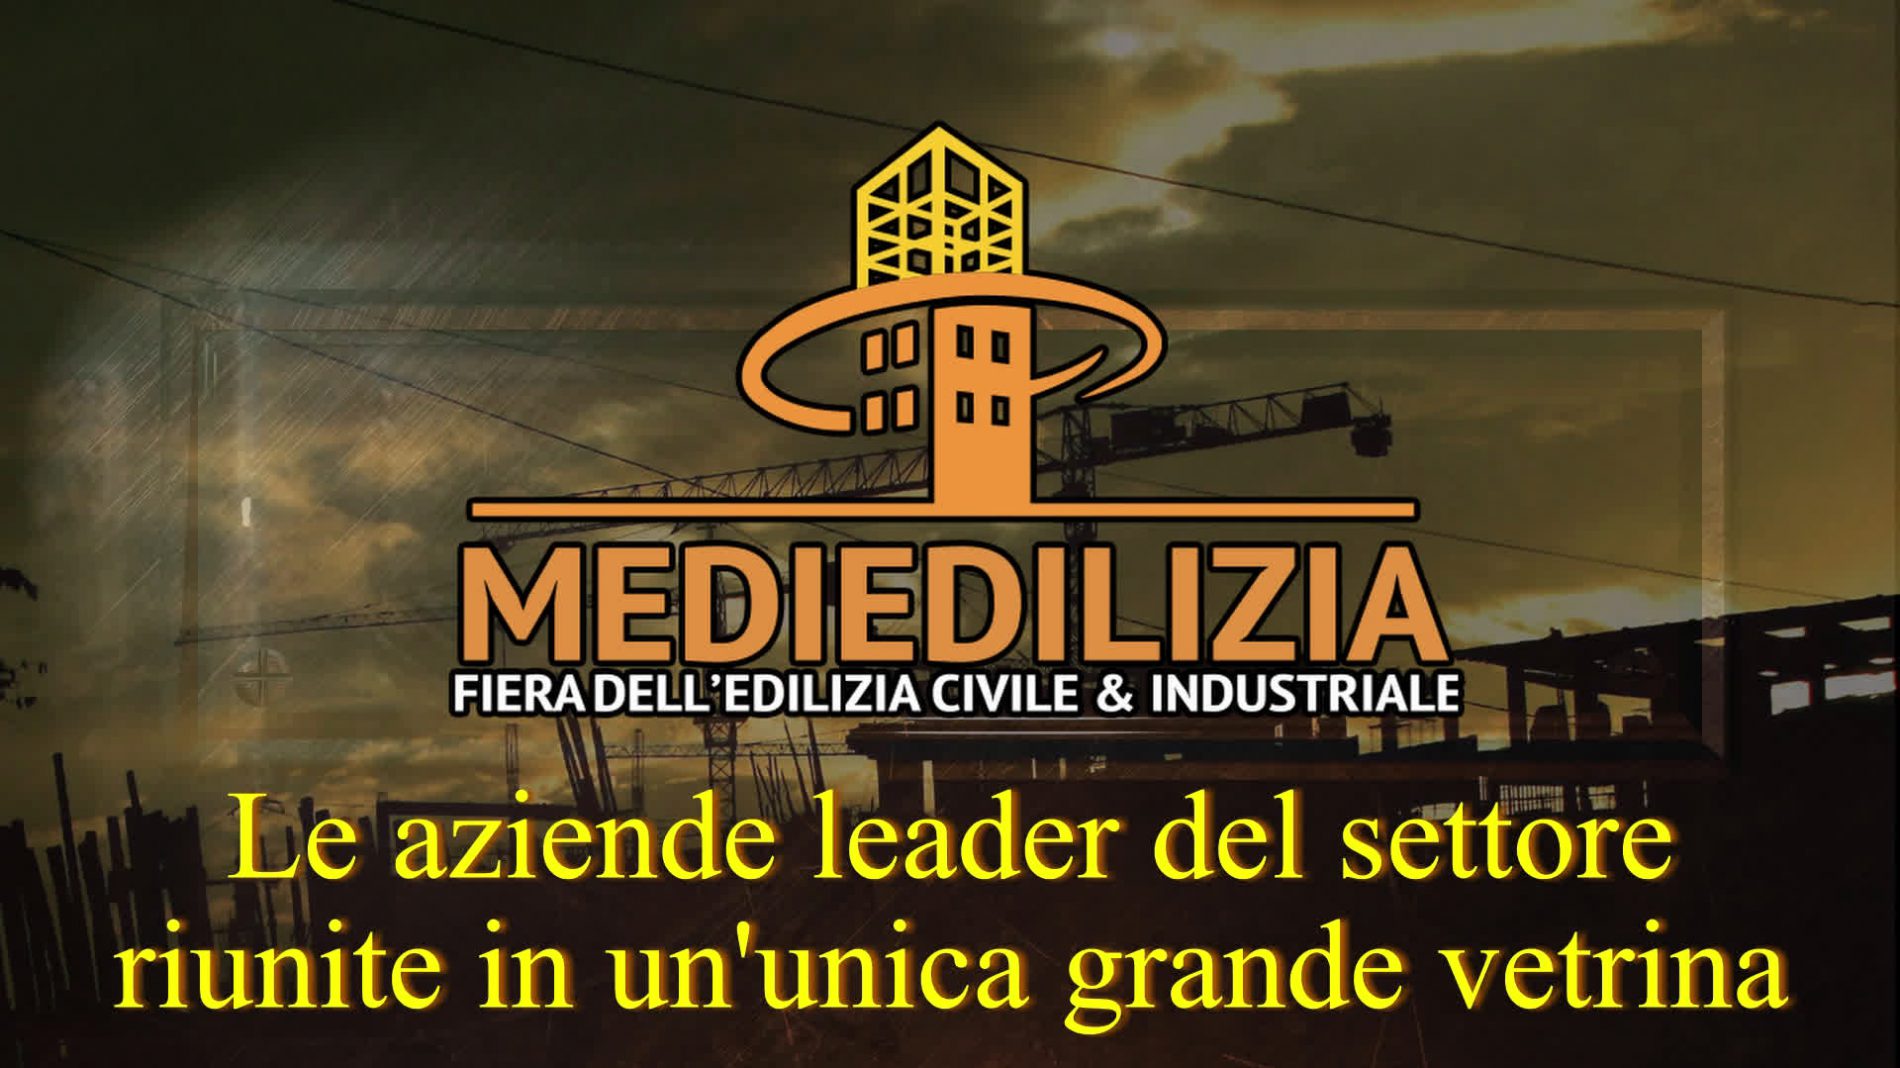 MediEdilizia 2018